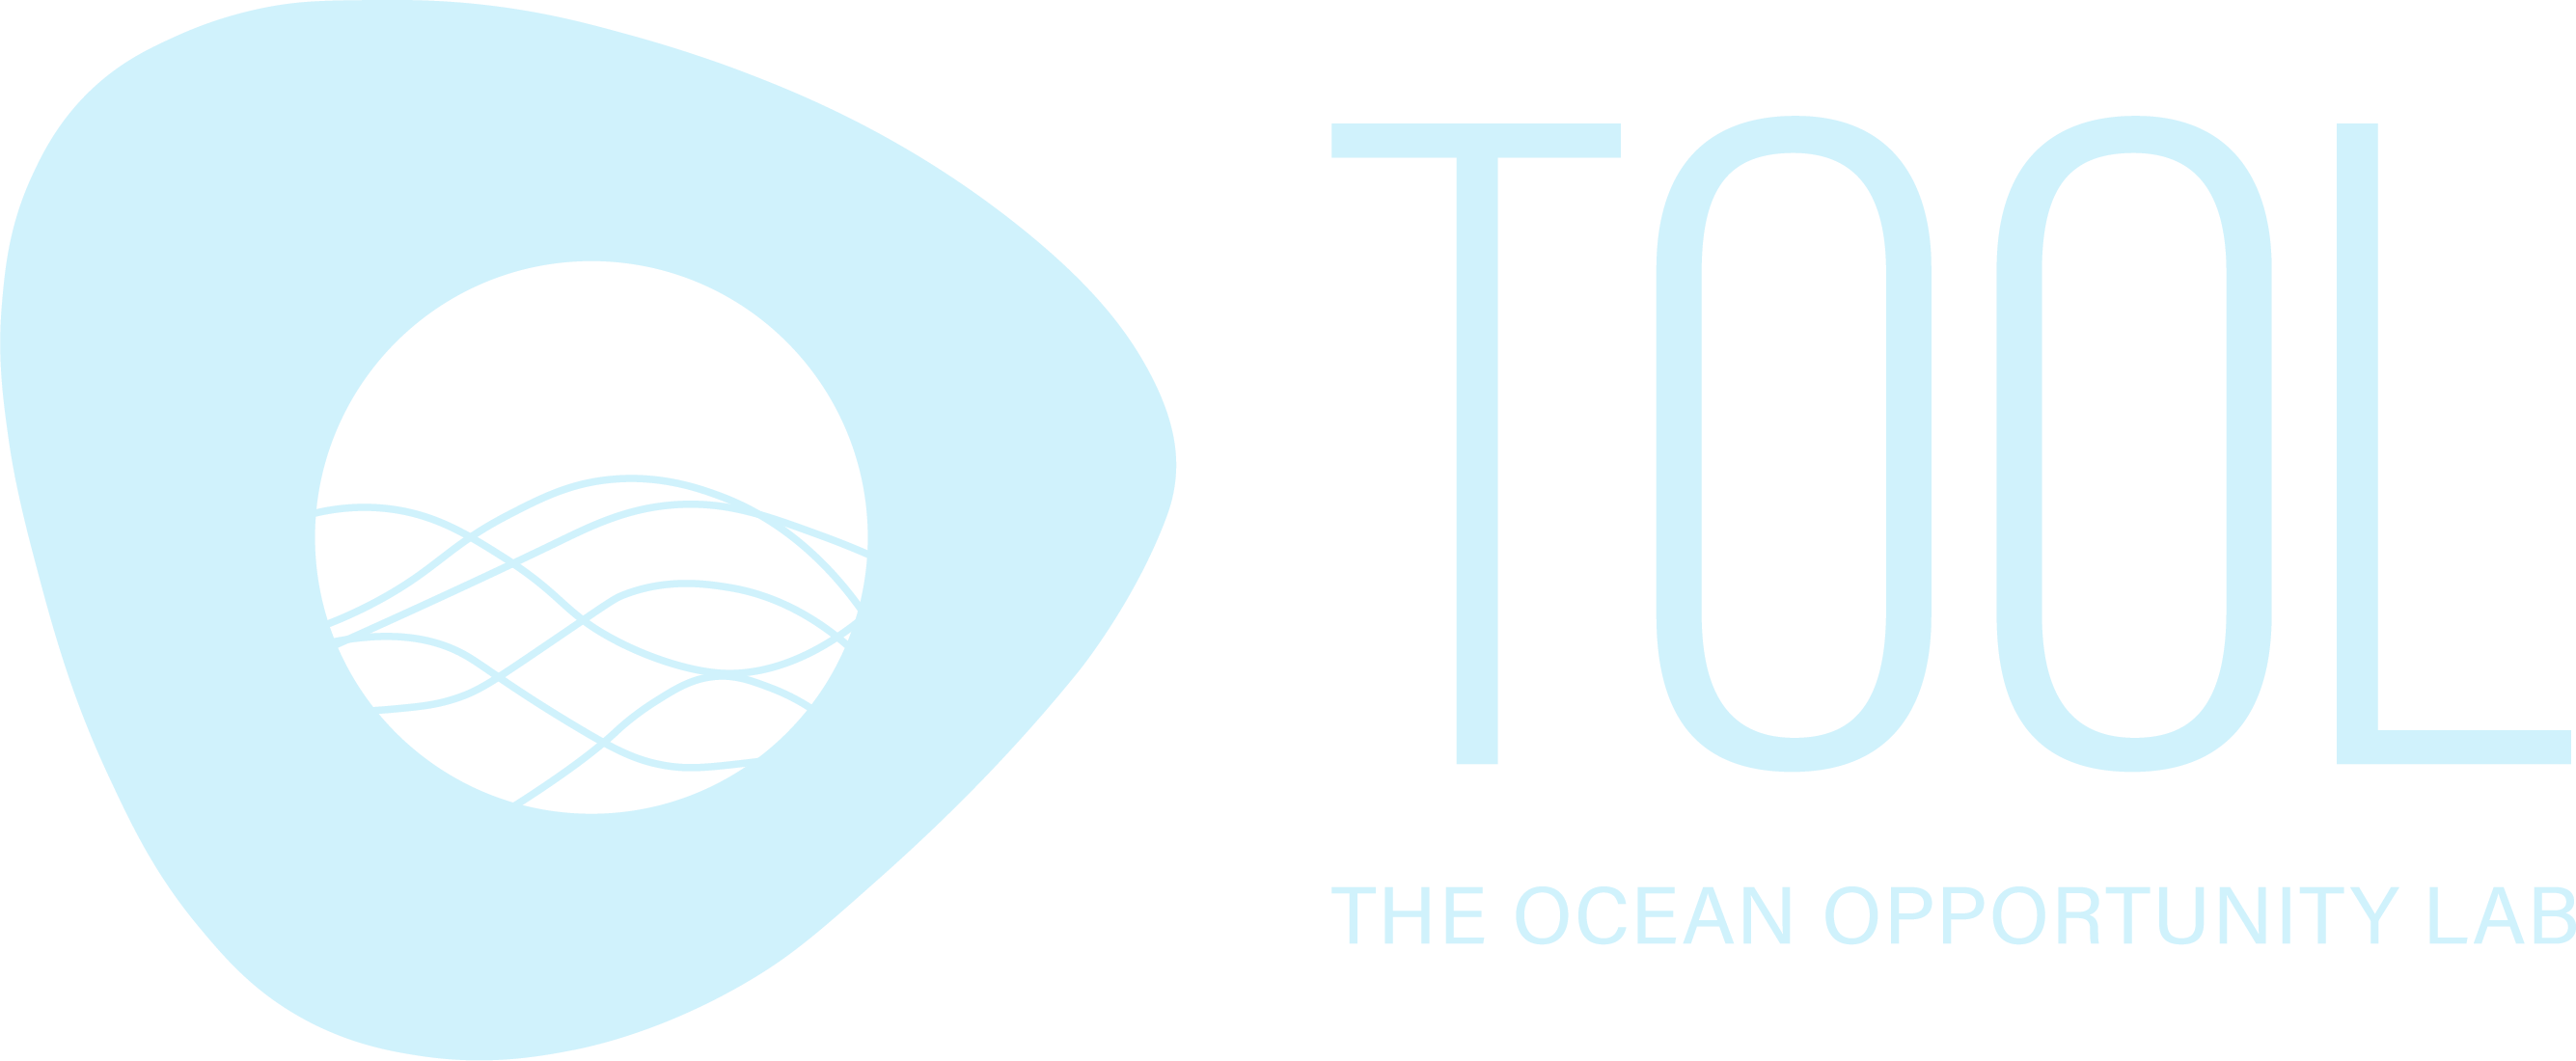 Tool Ocean Research